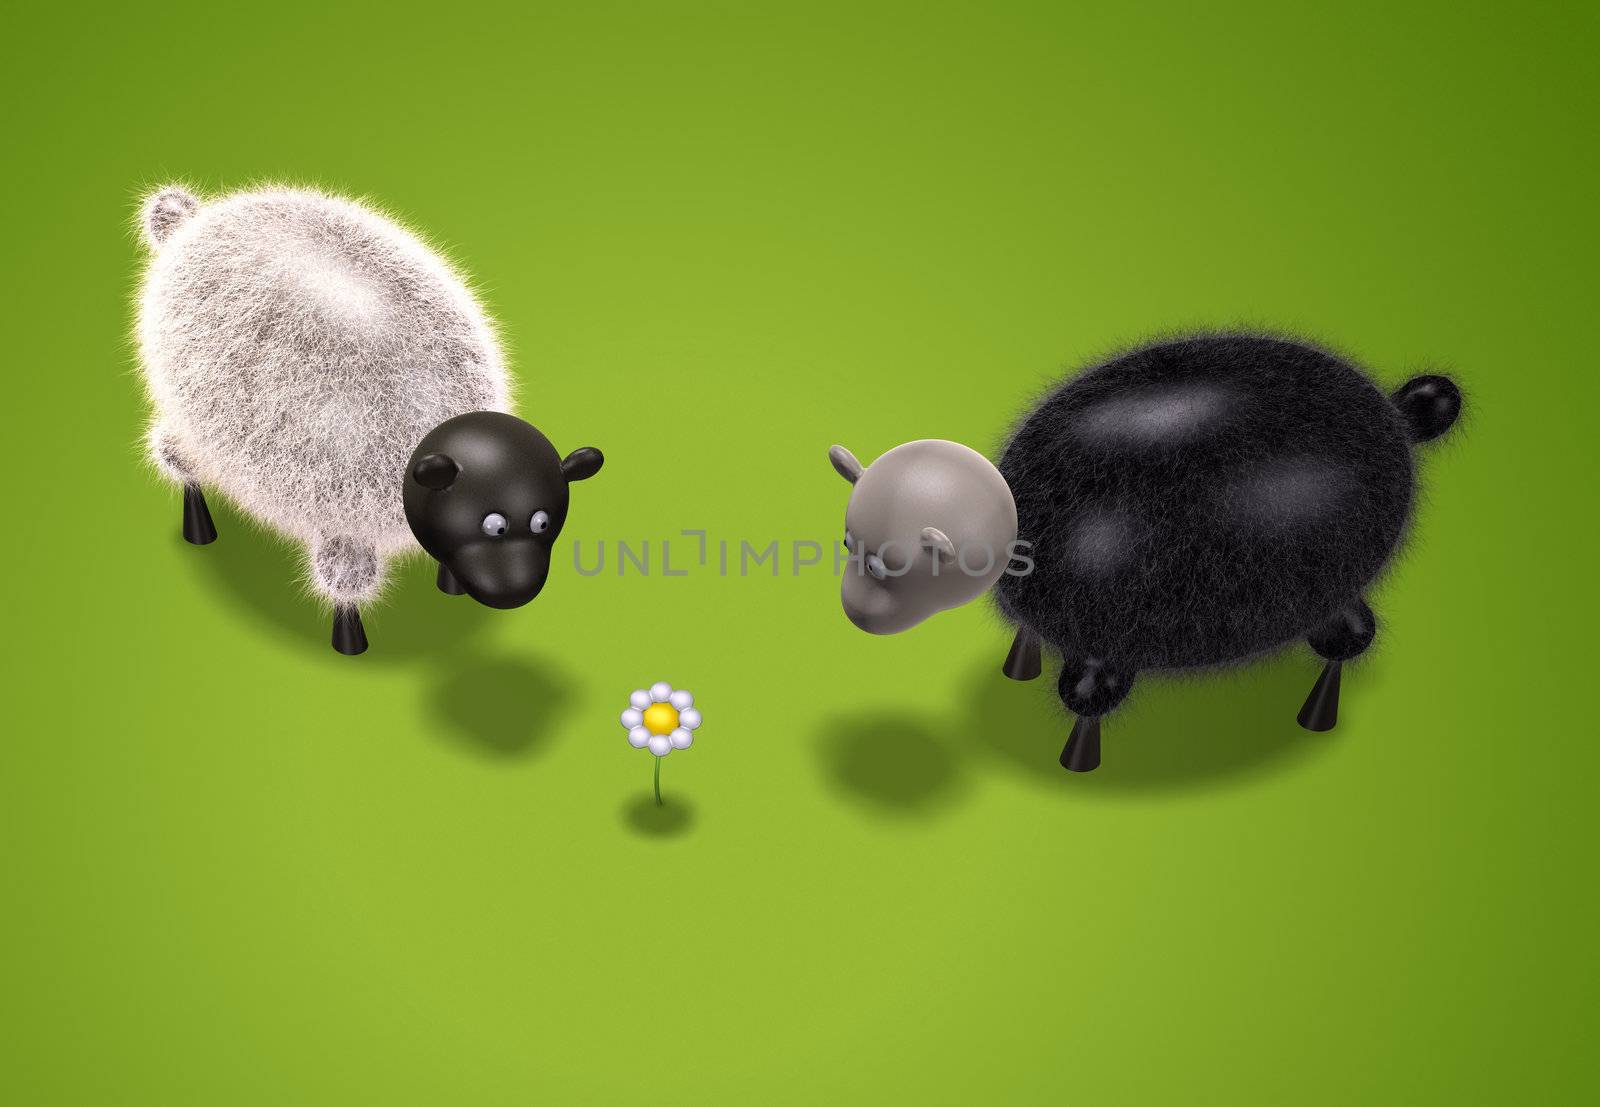 sheep by magann